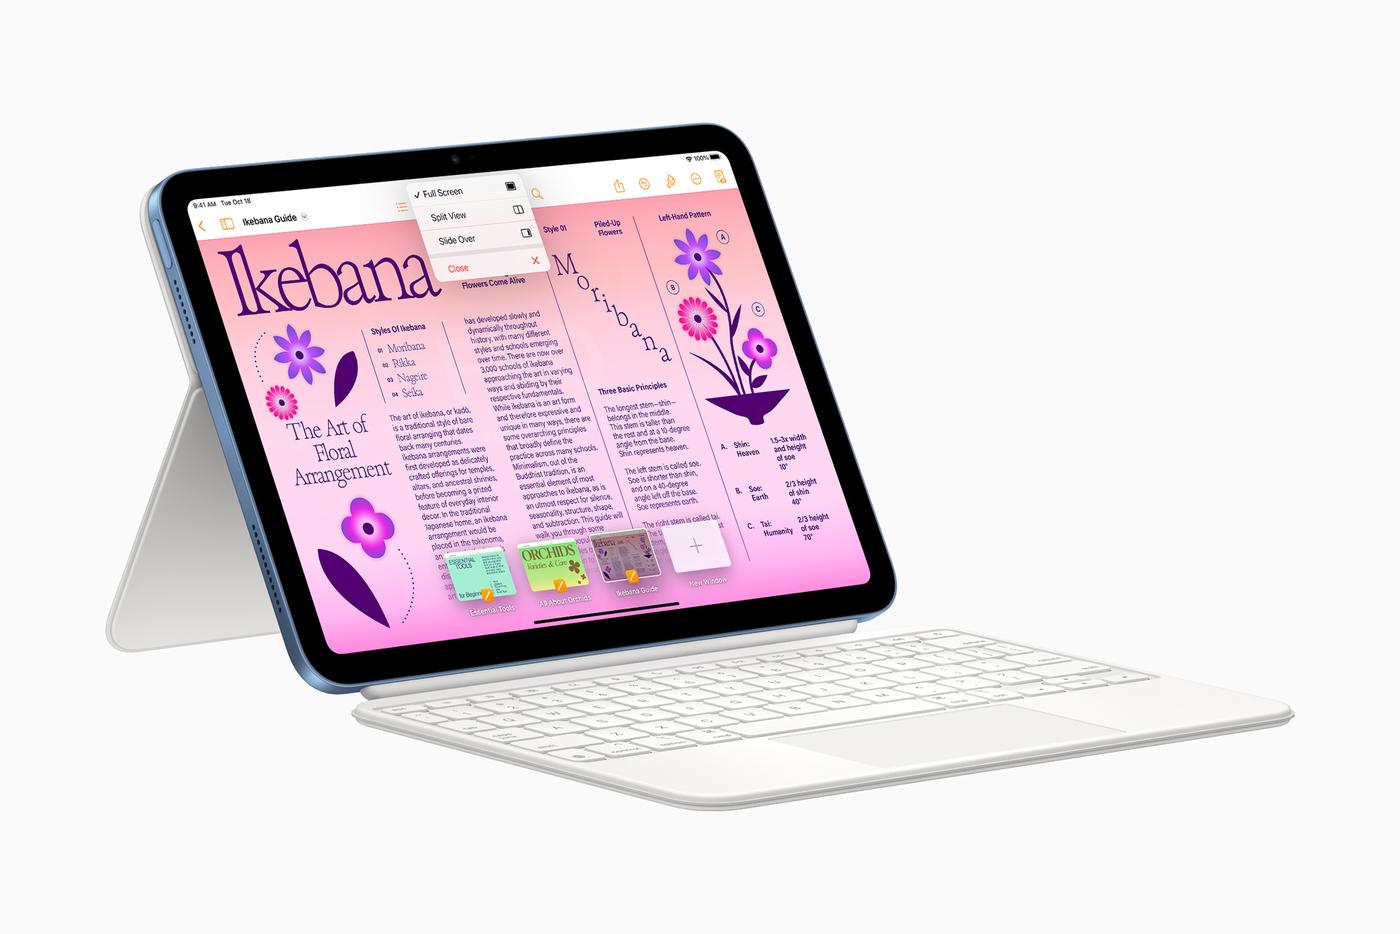 iPad (10e génération) : enfin des images de son nouveau design